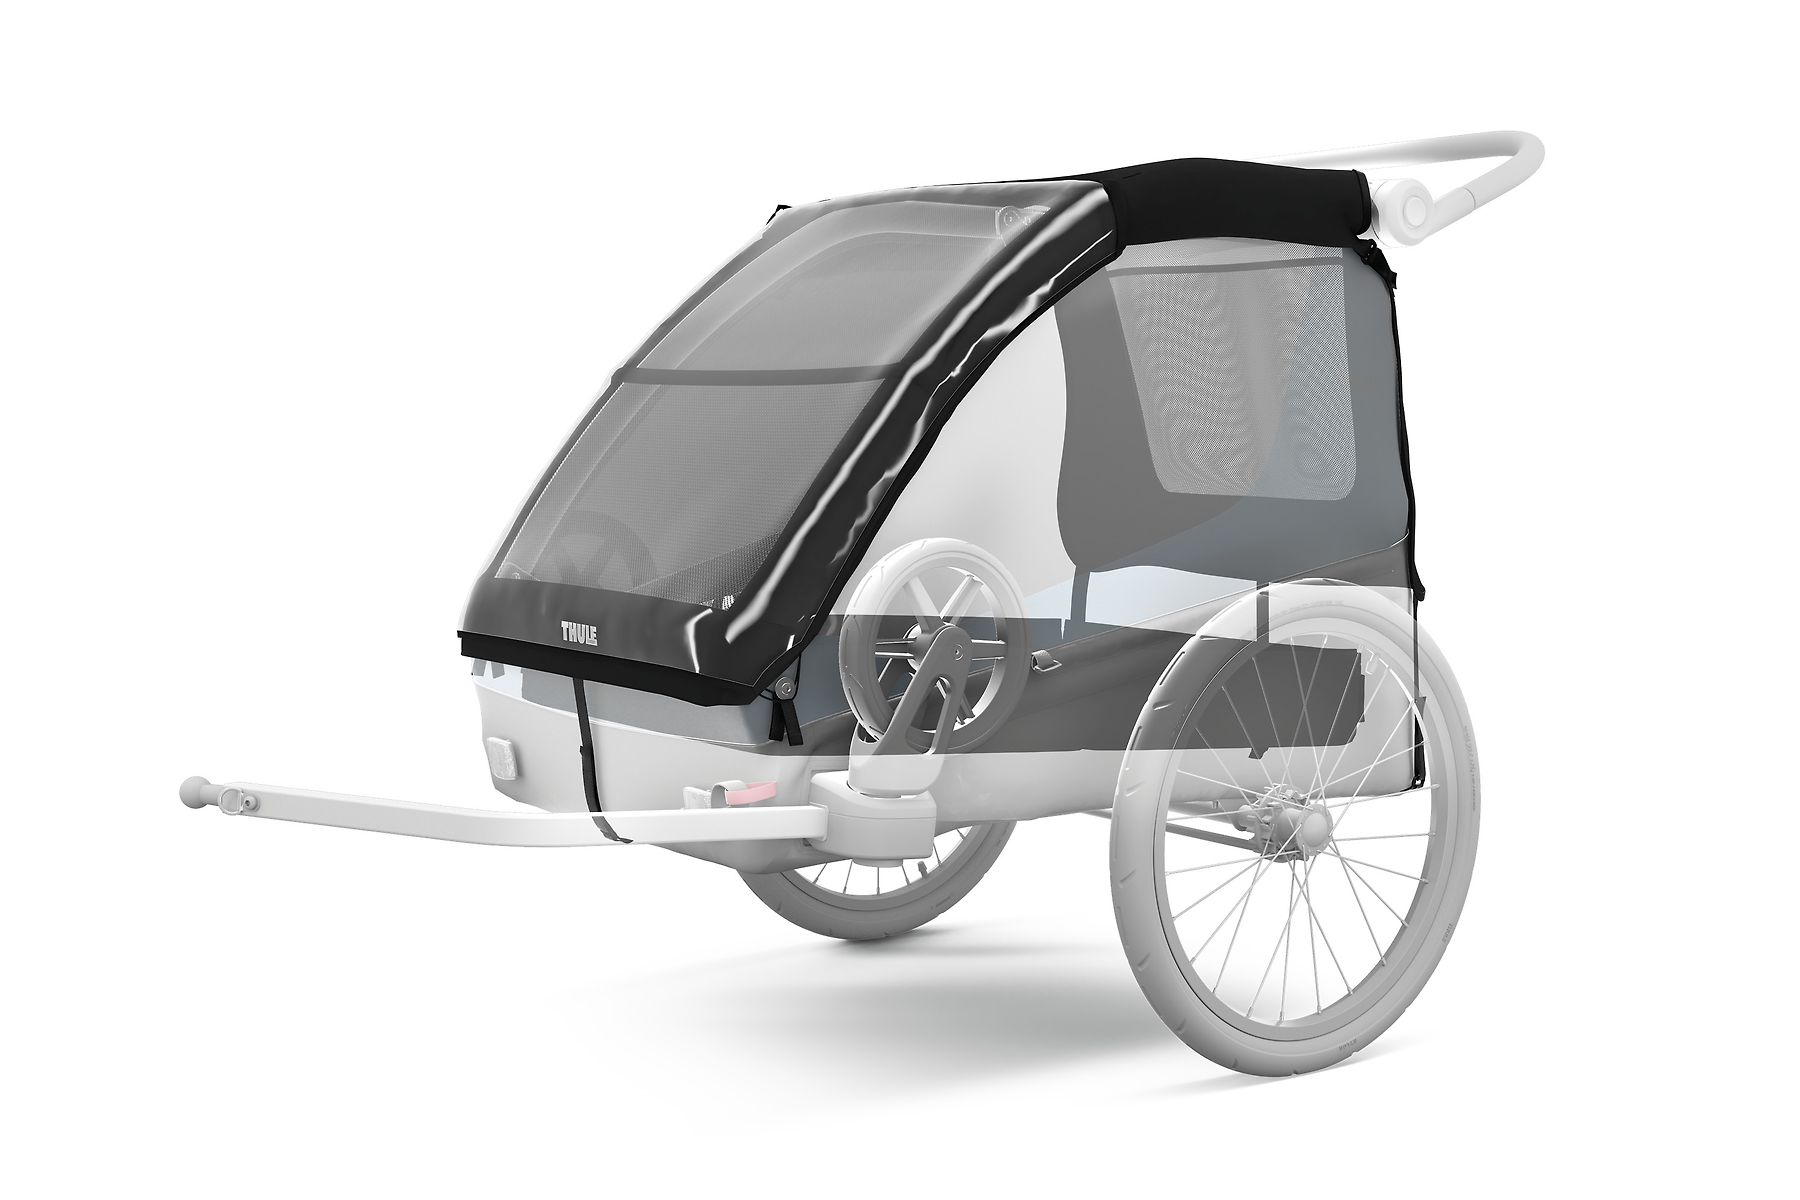 Verlichting niettemin Herhaal Thule courier dog trailer kit- fietskar niet inbegrepen - The Little Ones